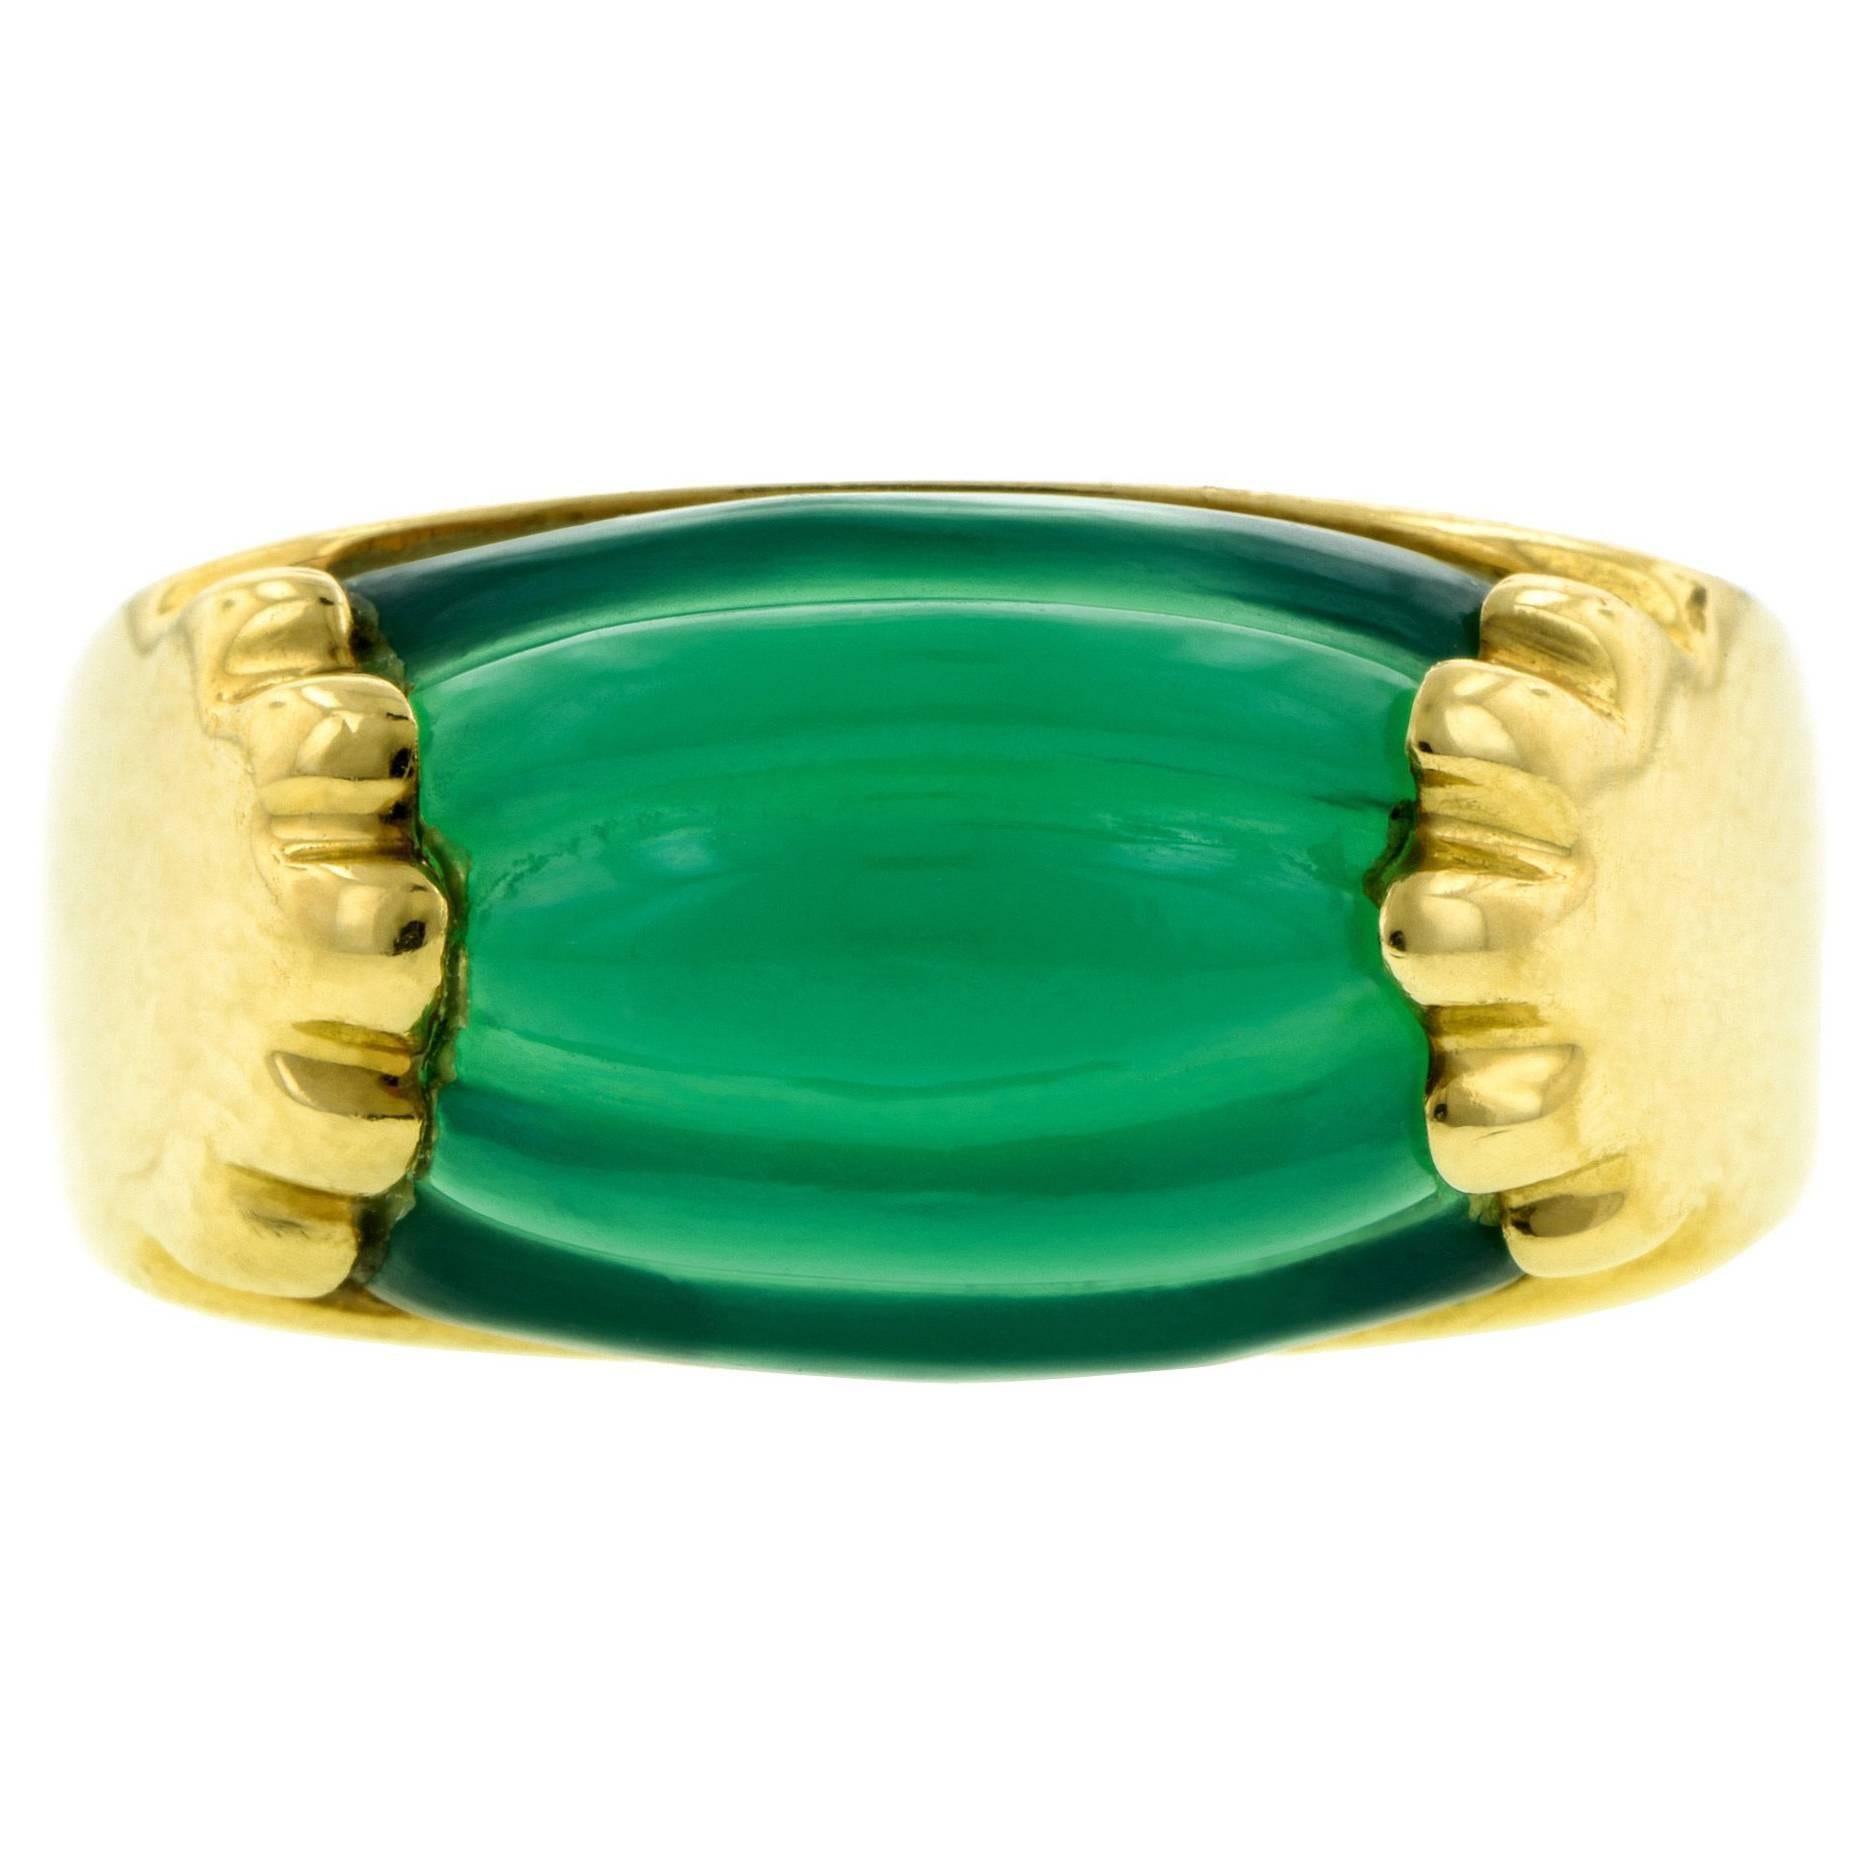  Bulgari Green Onyx Gold Tronchetta Ring 